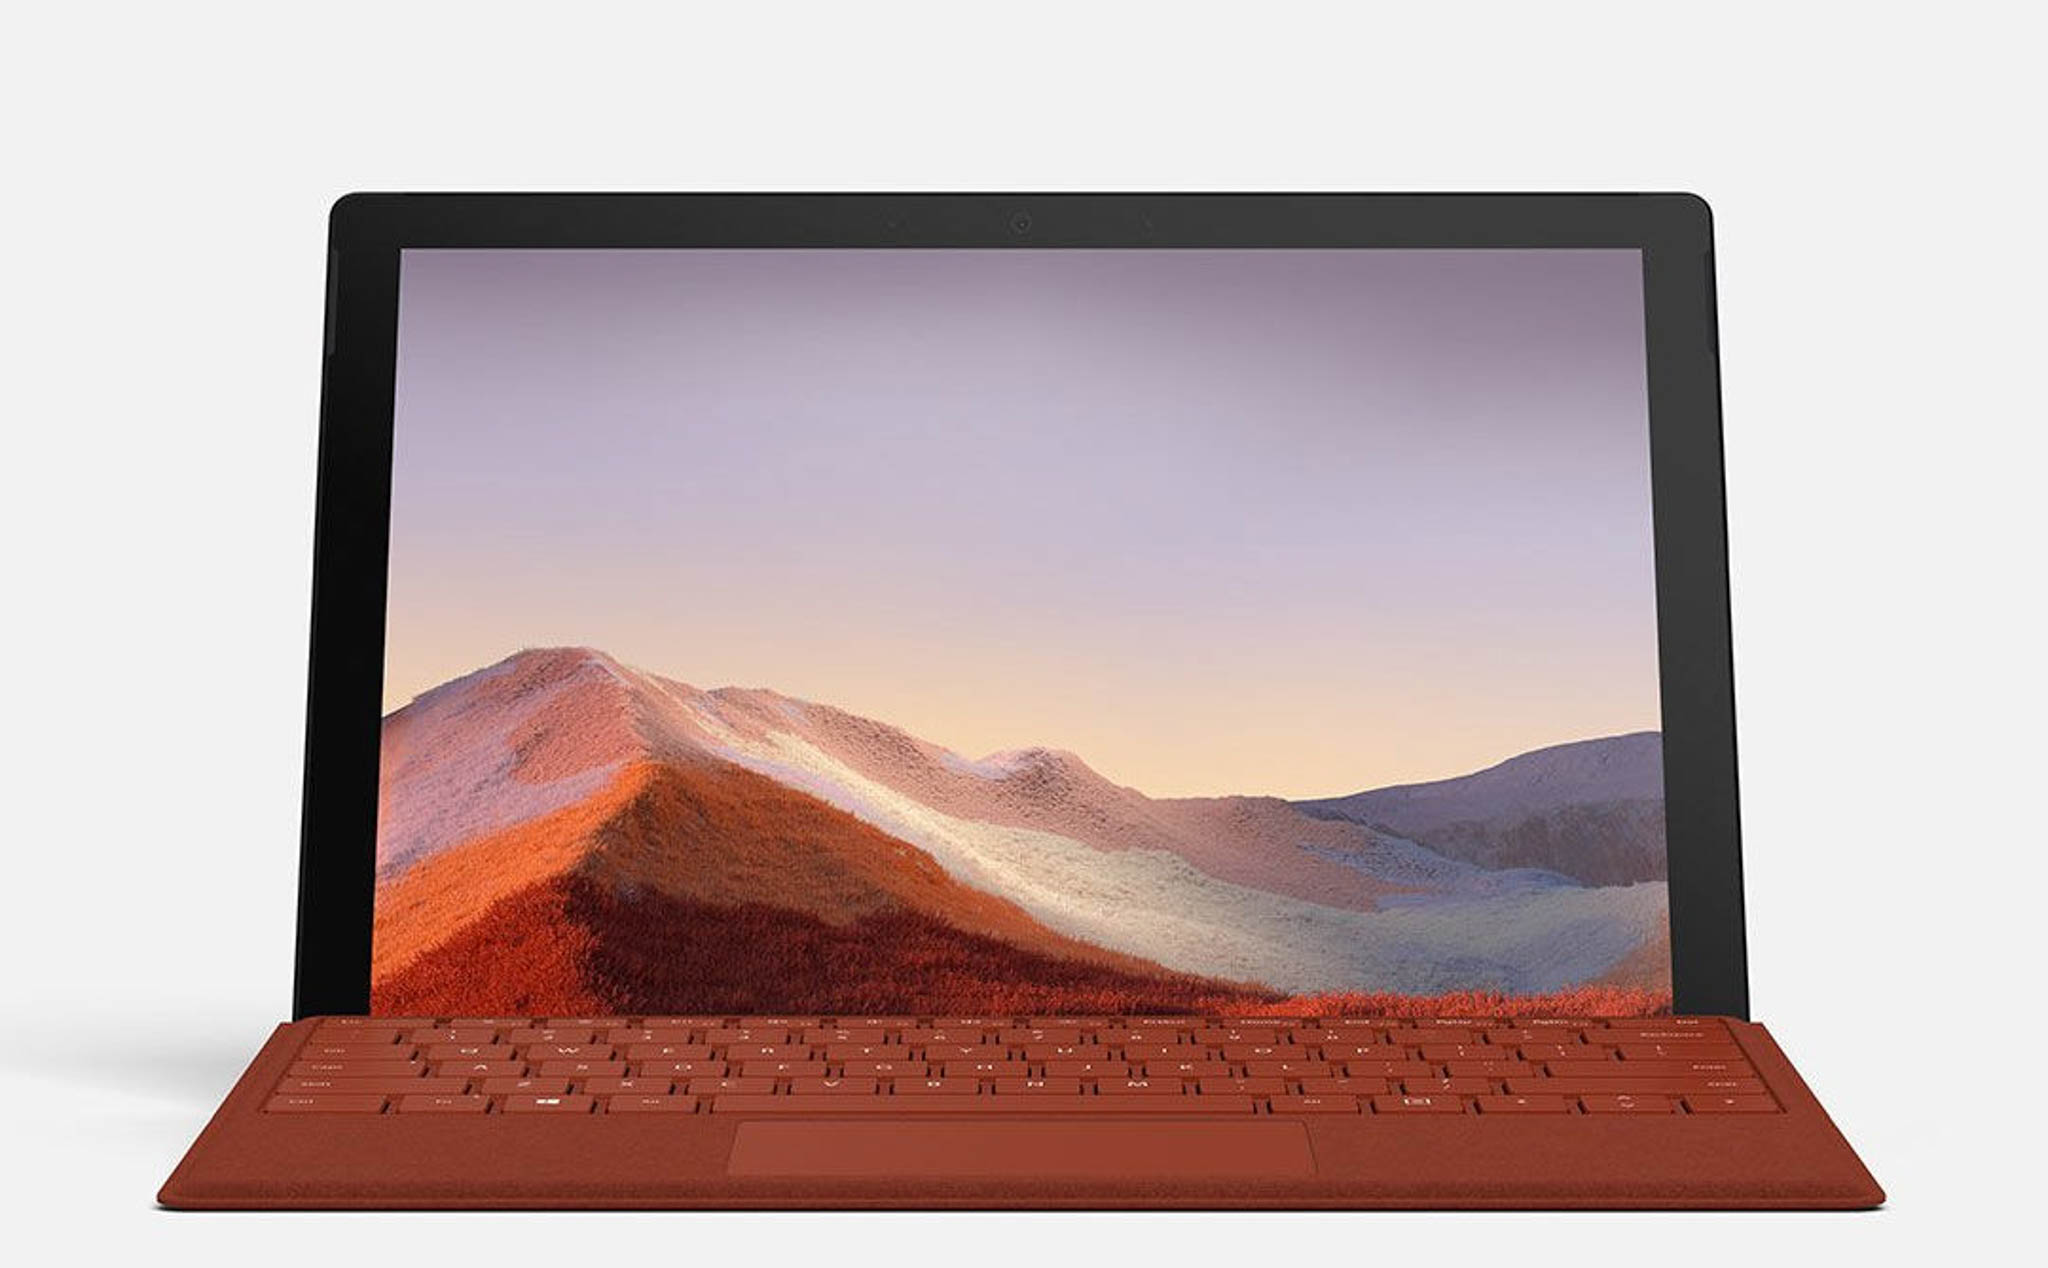 Microsoft Surface Pro 7 chính thức: Màn hình 12.3 inch, thêm USB-C, giá từ 749 USD